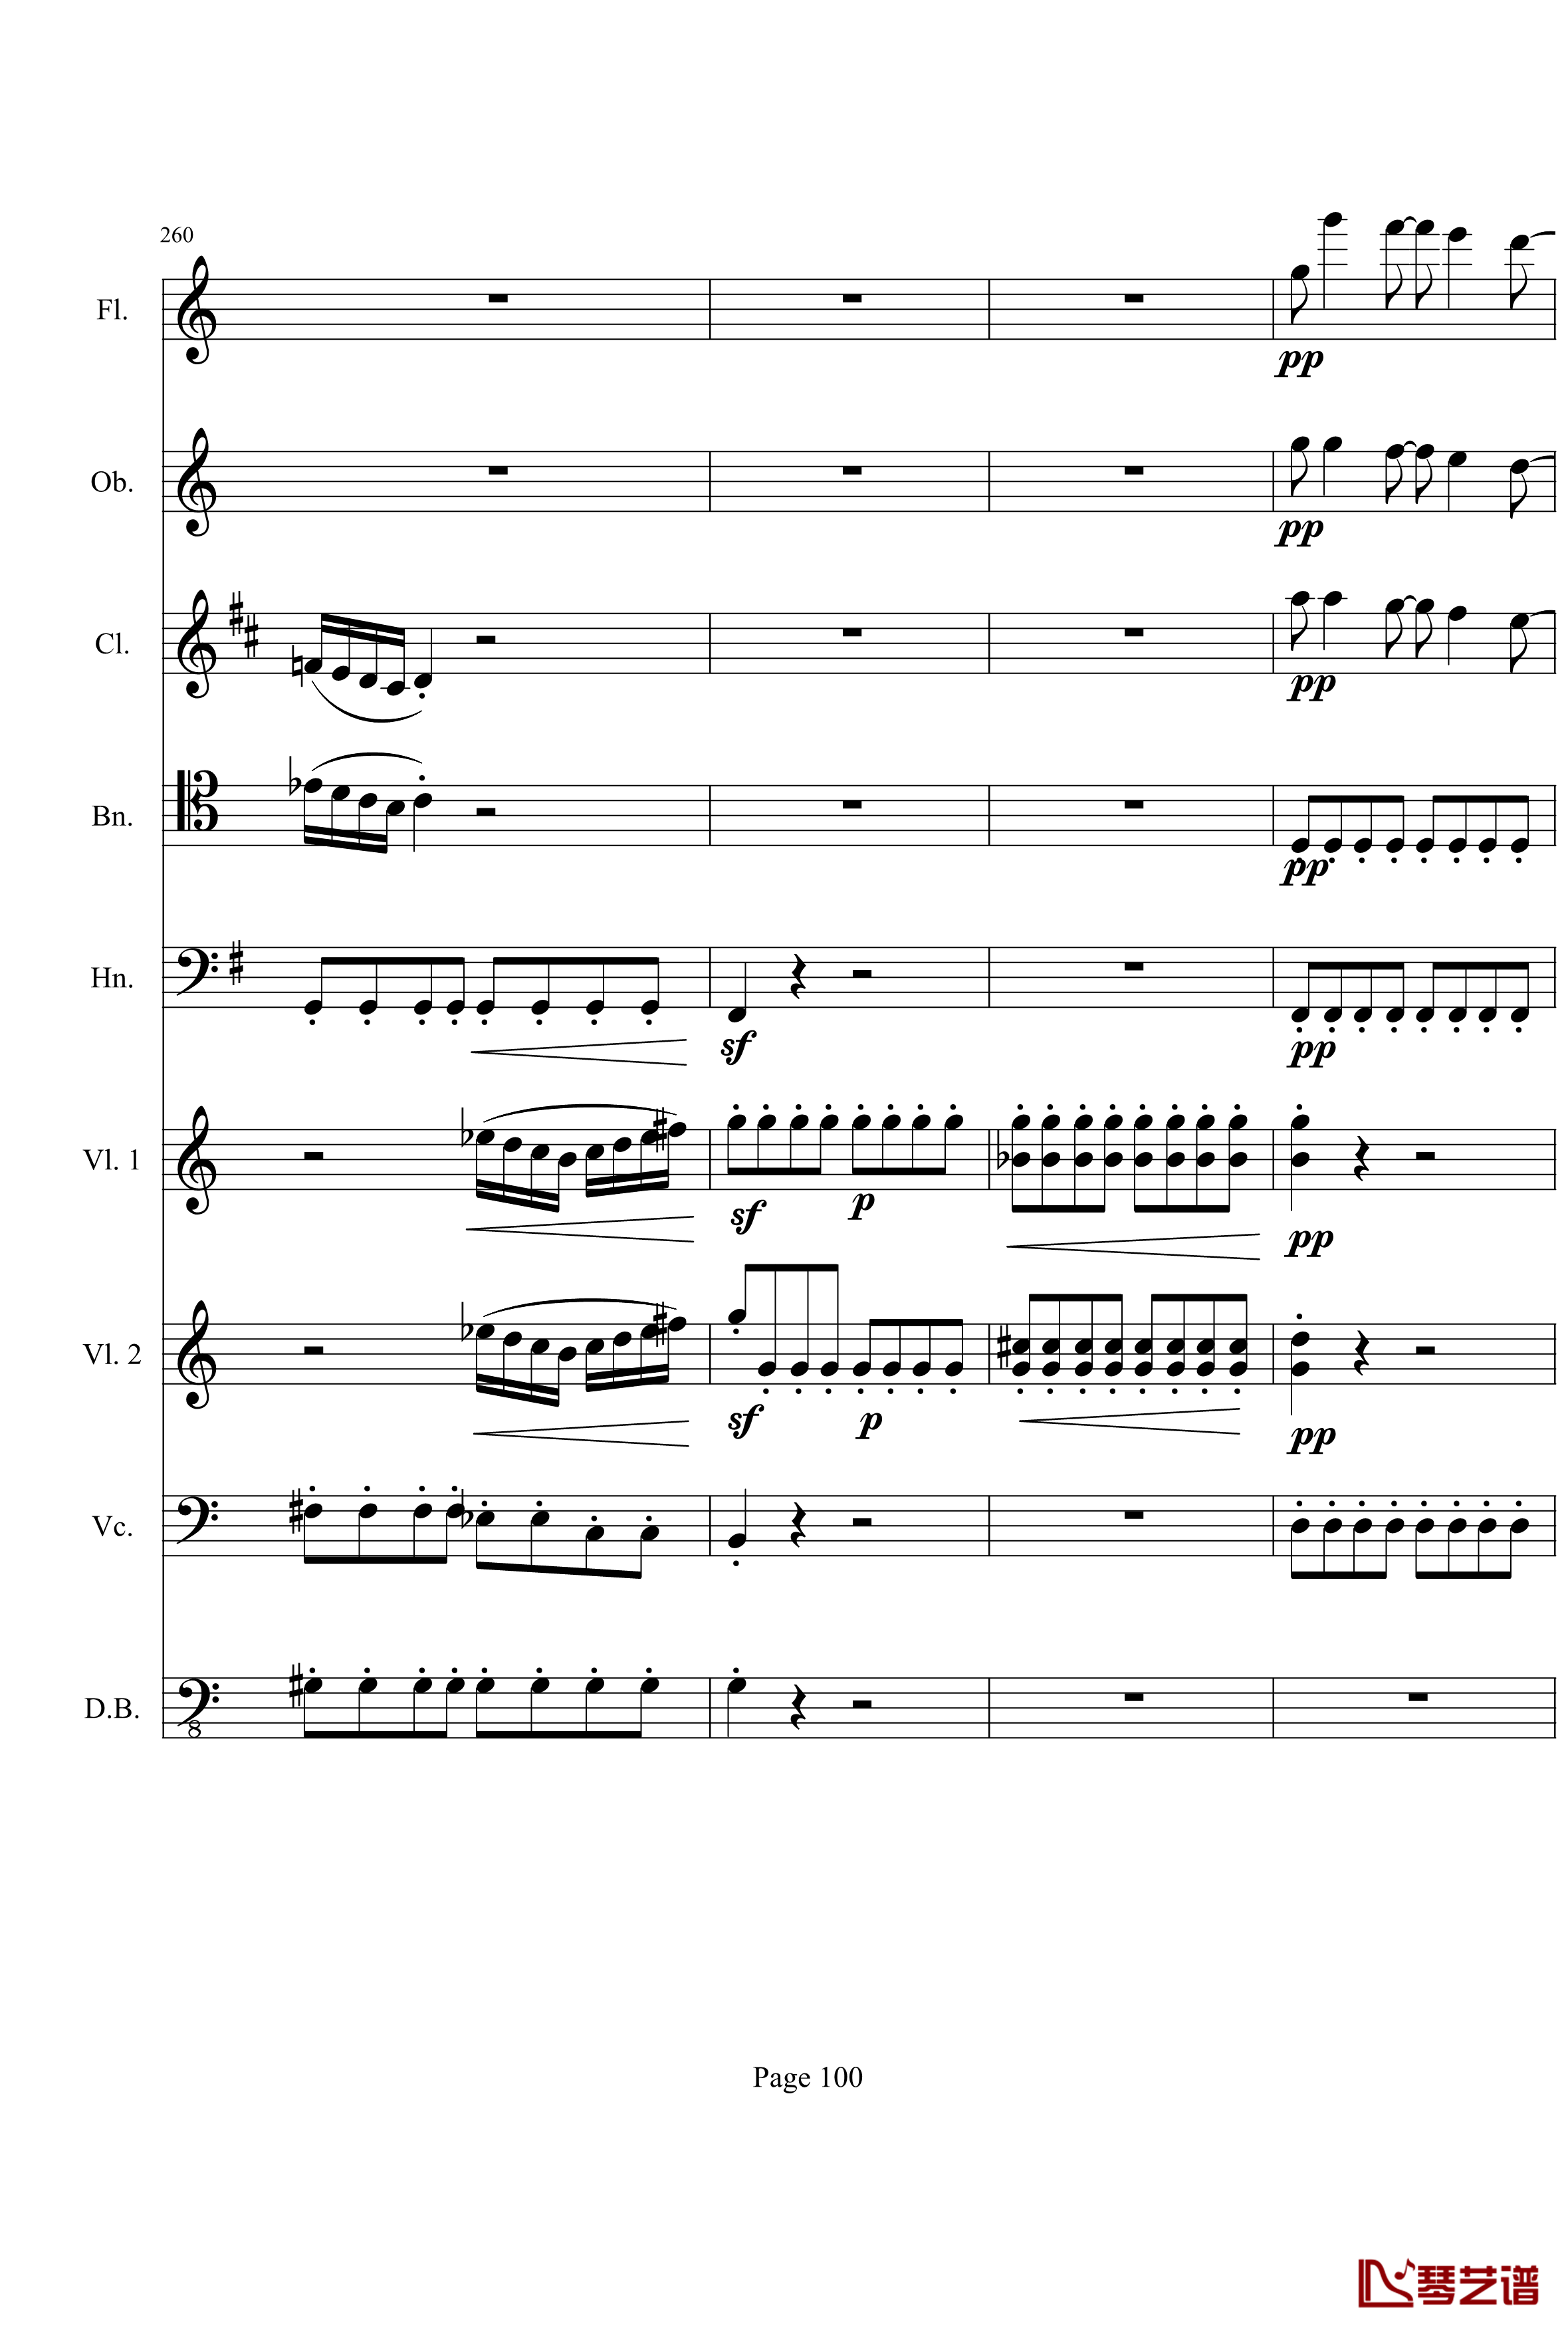 奏鸣曲之交响钢琴谱-第21首-Ⅰ-贝多芬-beethoven100